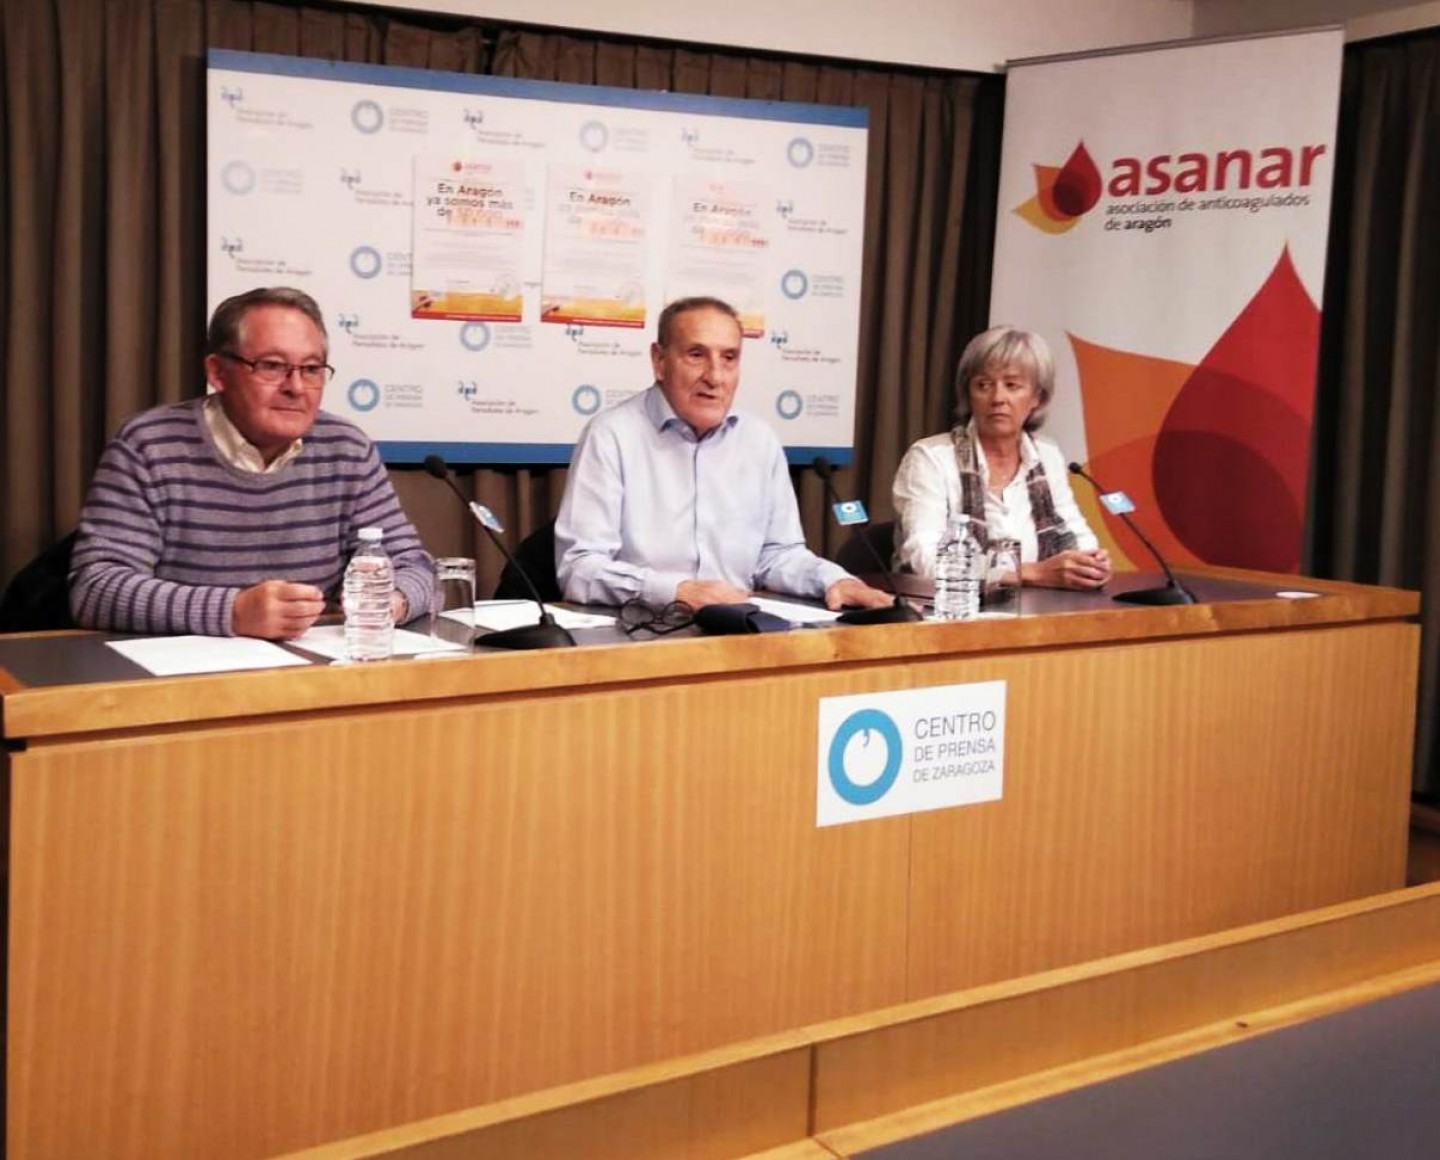 La Asociación de Anticoagulados de Aragón advierte de que cada vez son más jóvenes las personas con problemas de coagulación sanguínea